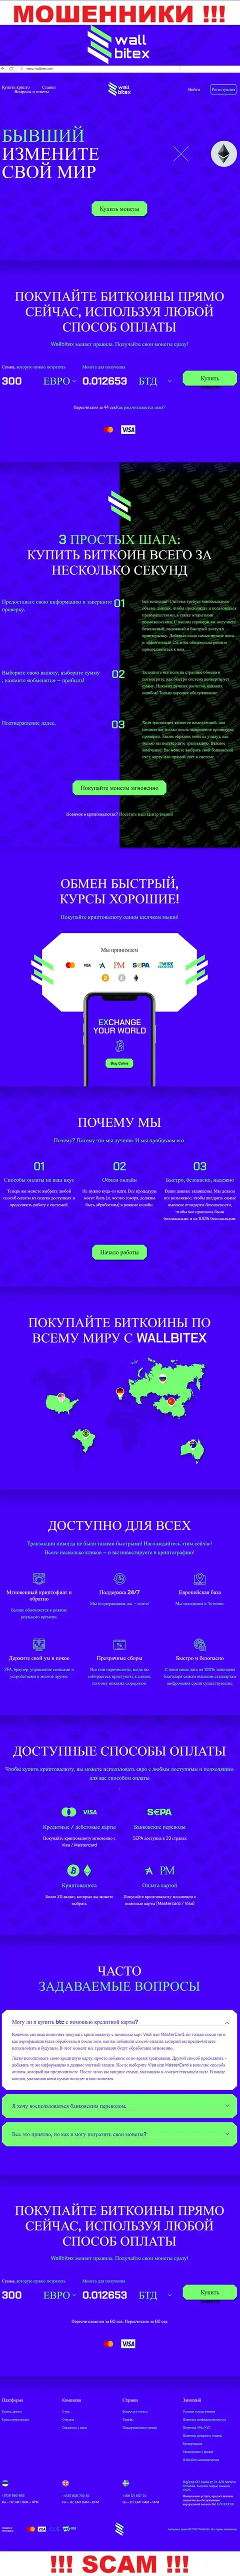 WallBitex Com - это официальный web-сервис незаконно действующей конторы WallBitex